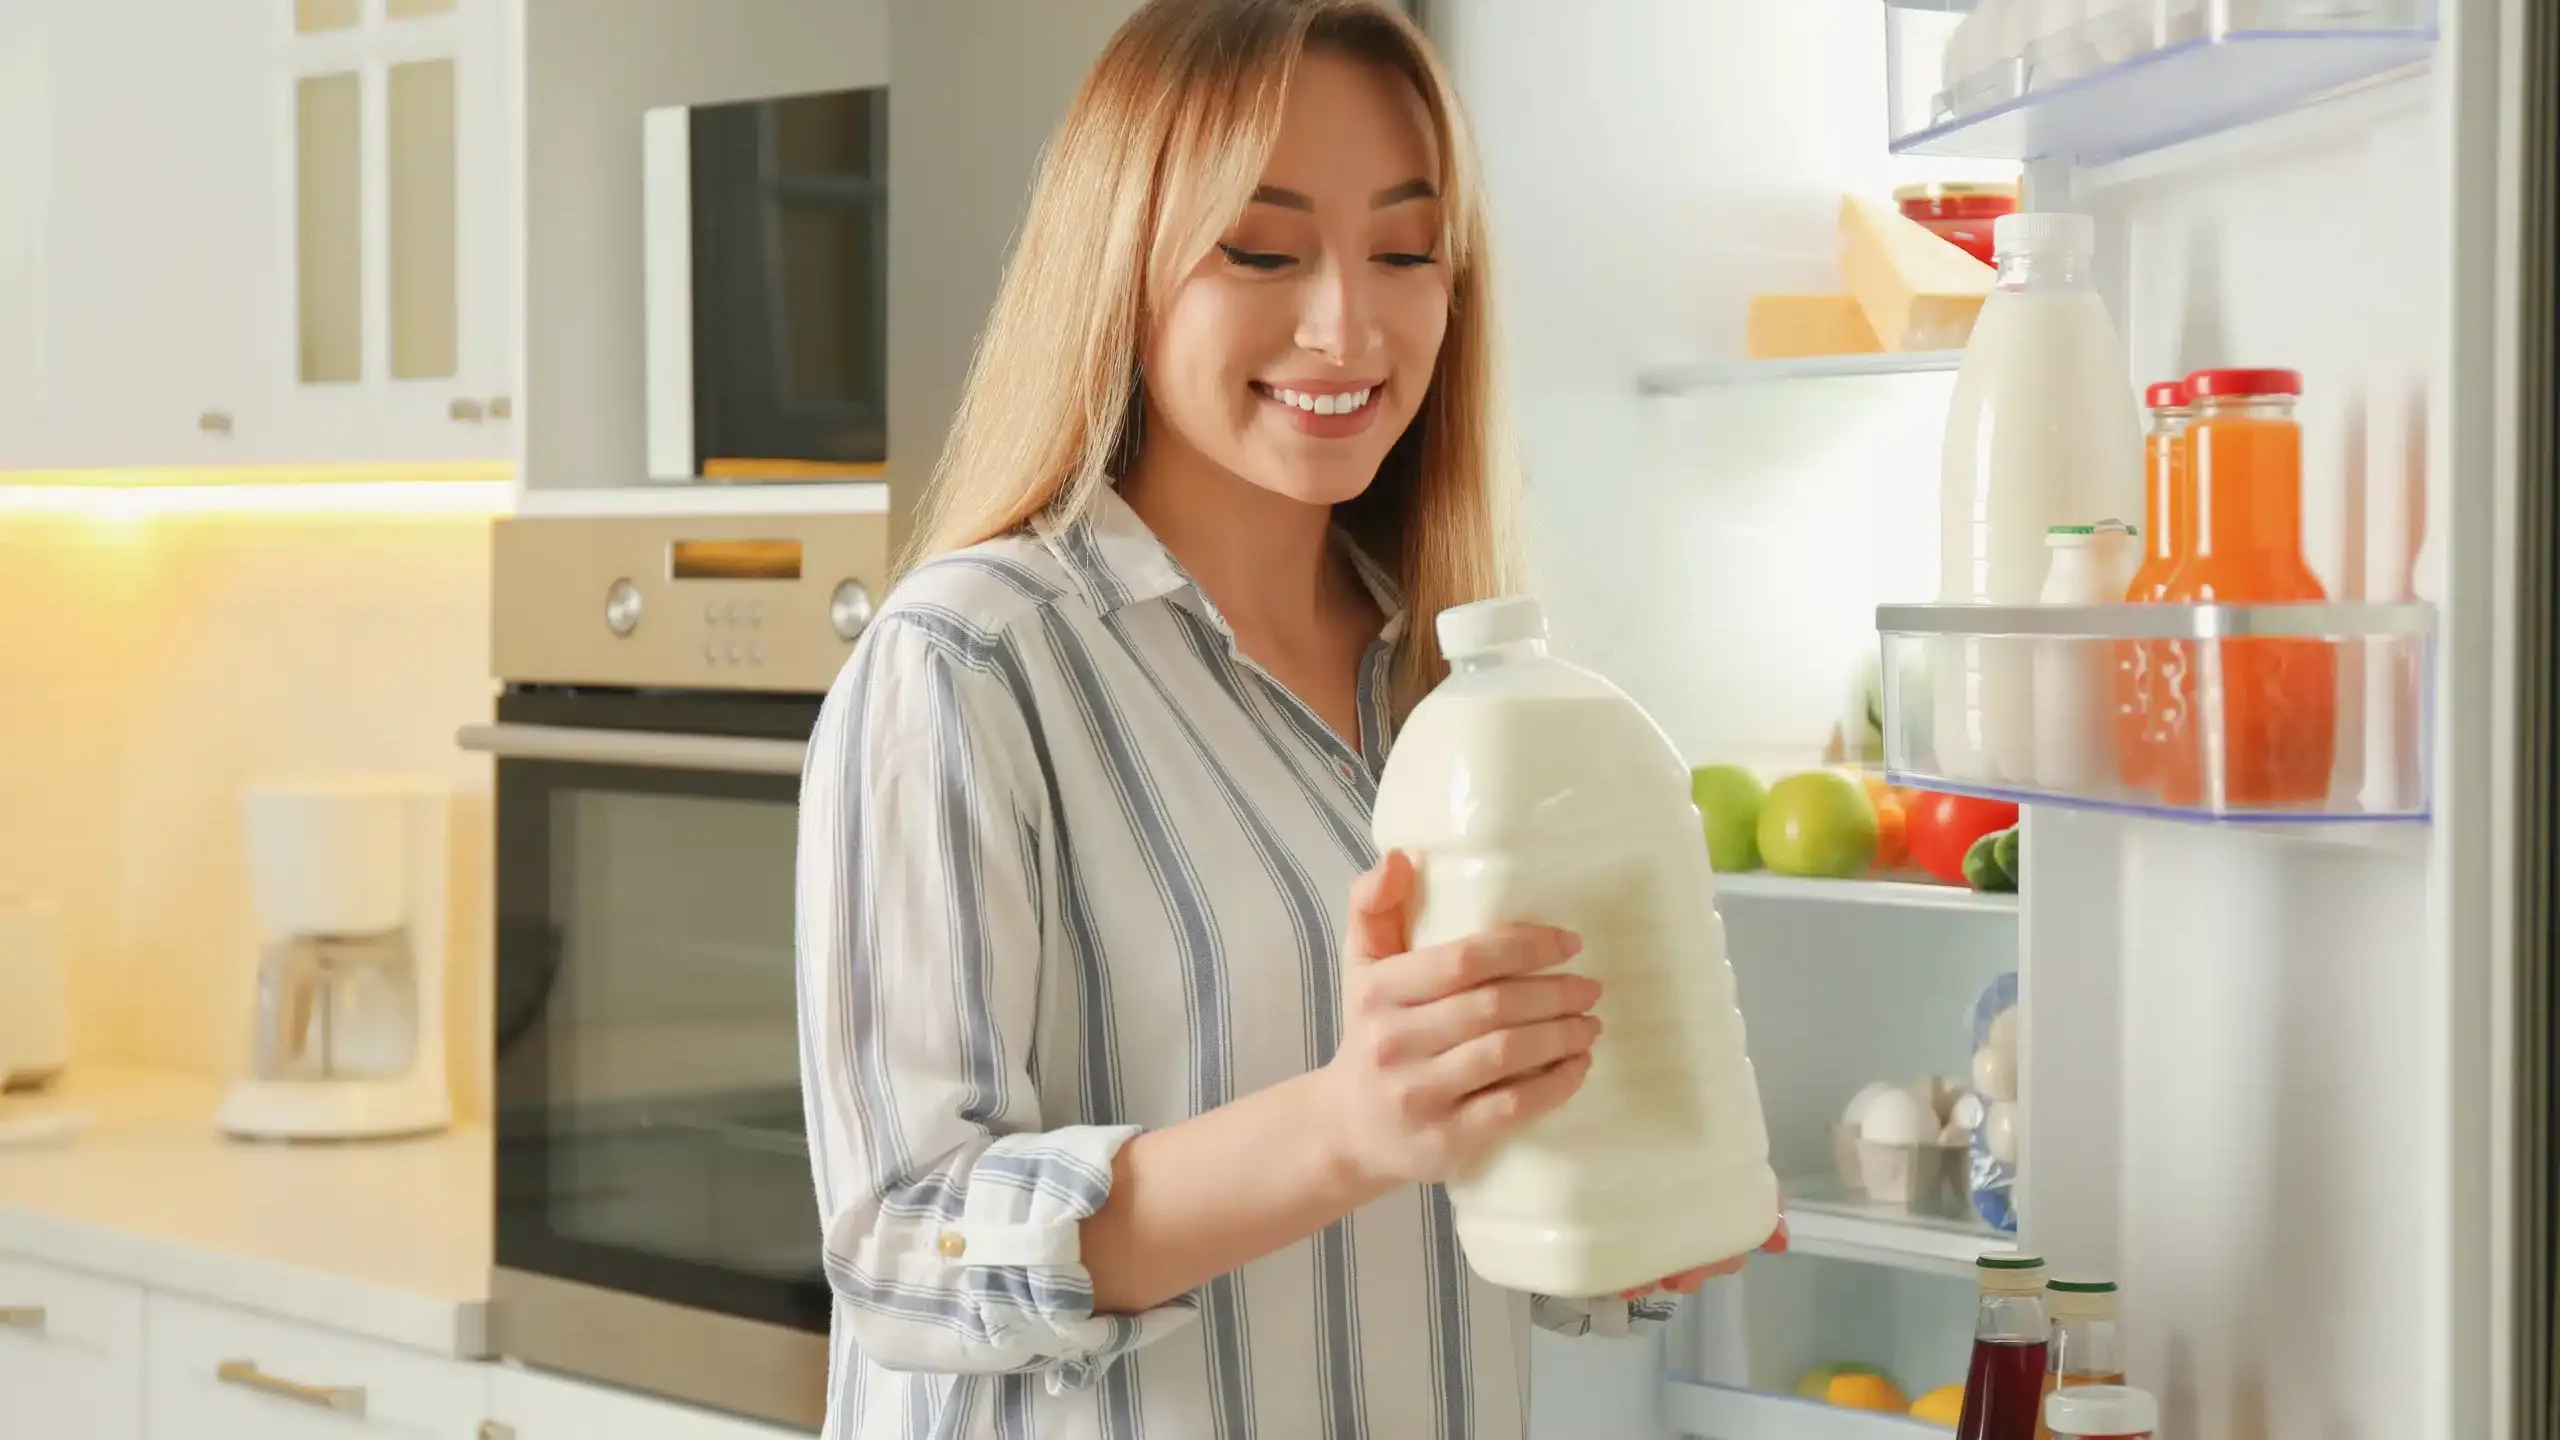 Kobieta trzymająca butelkę mleka stoi przy otwartej lodówce zastanawiając się, jak układać w lodówce nabiał